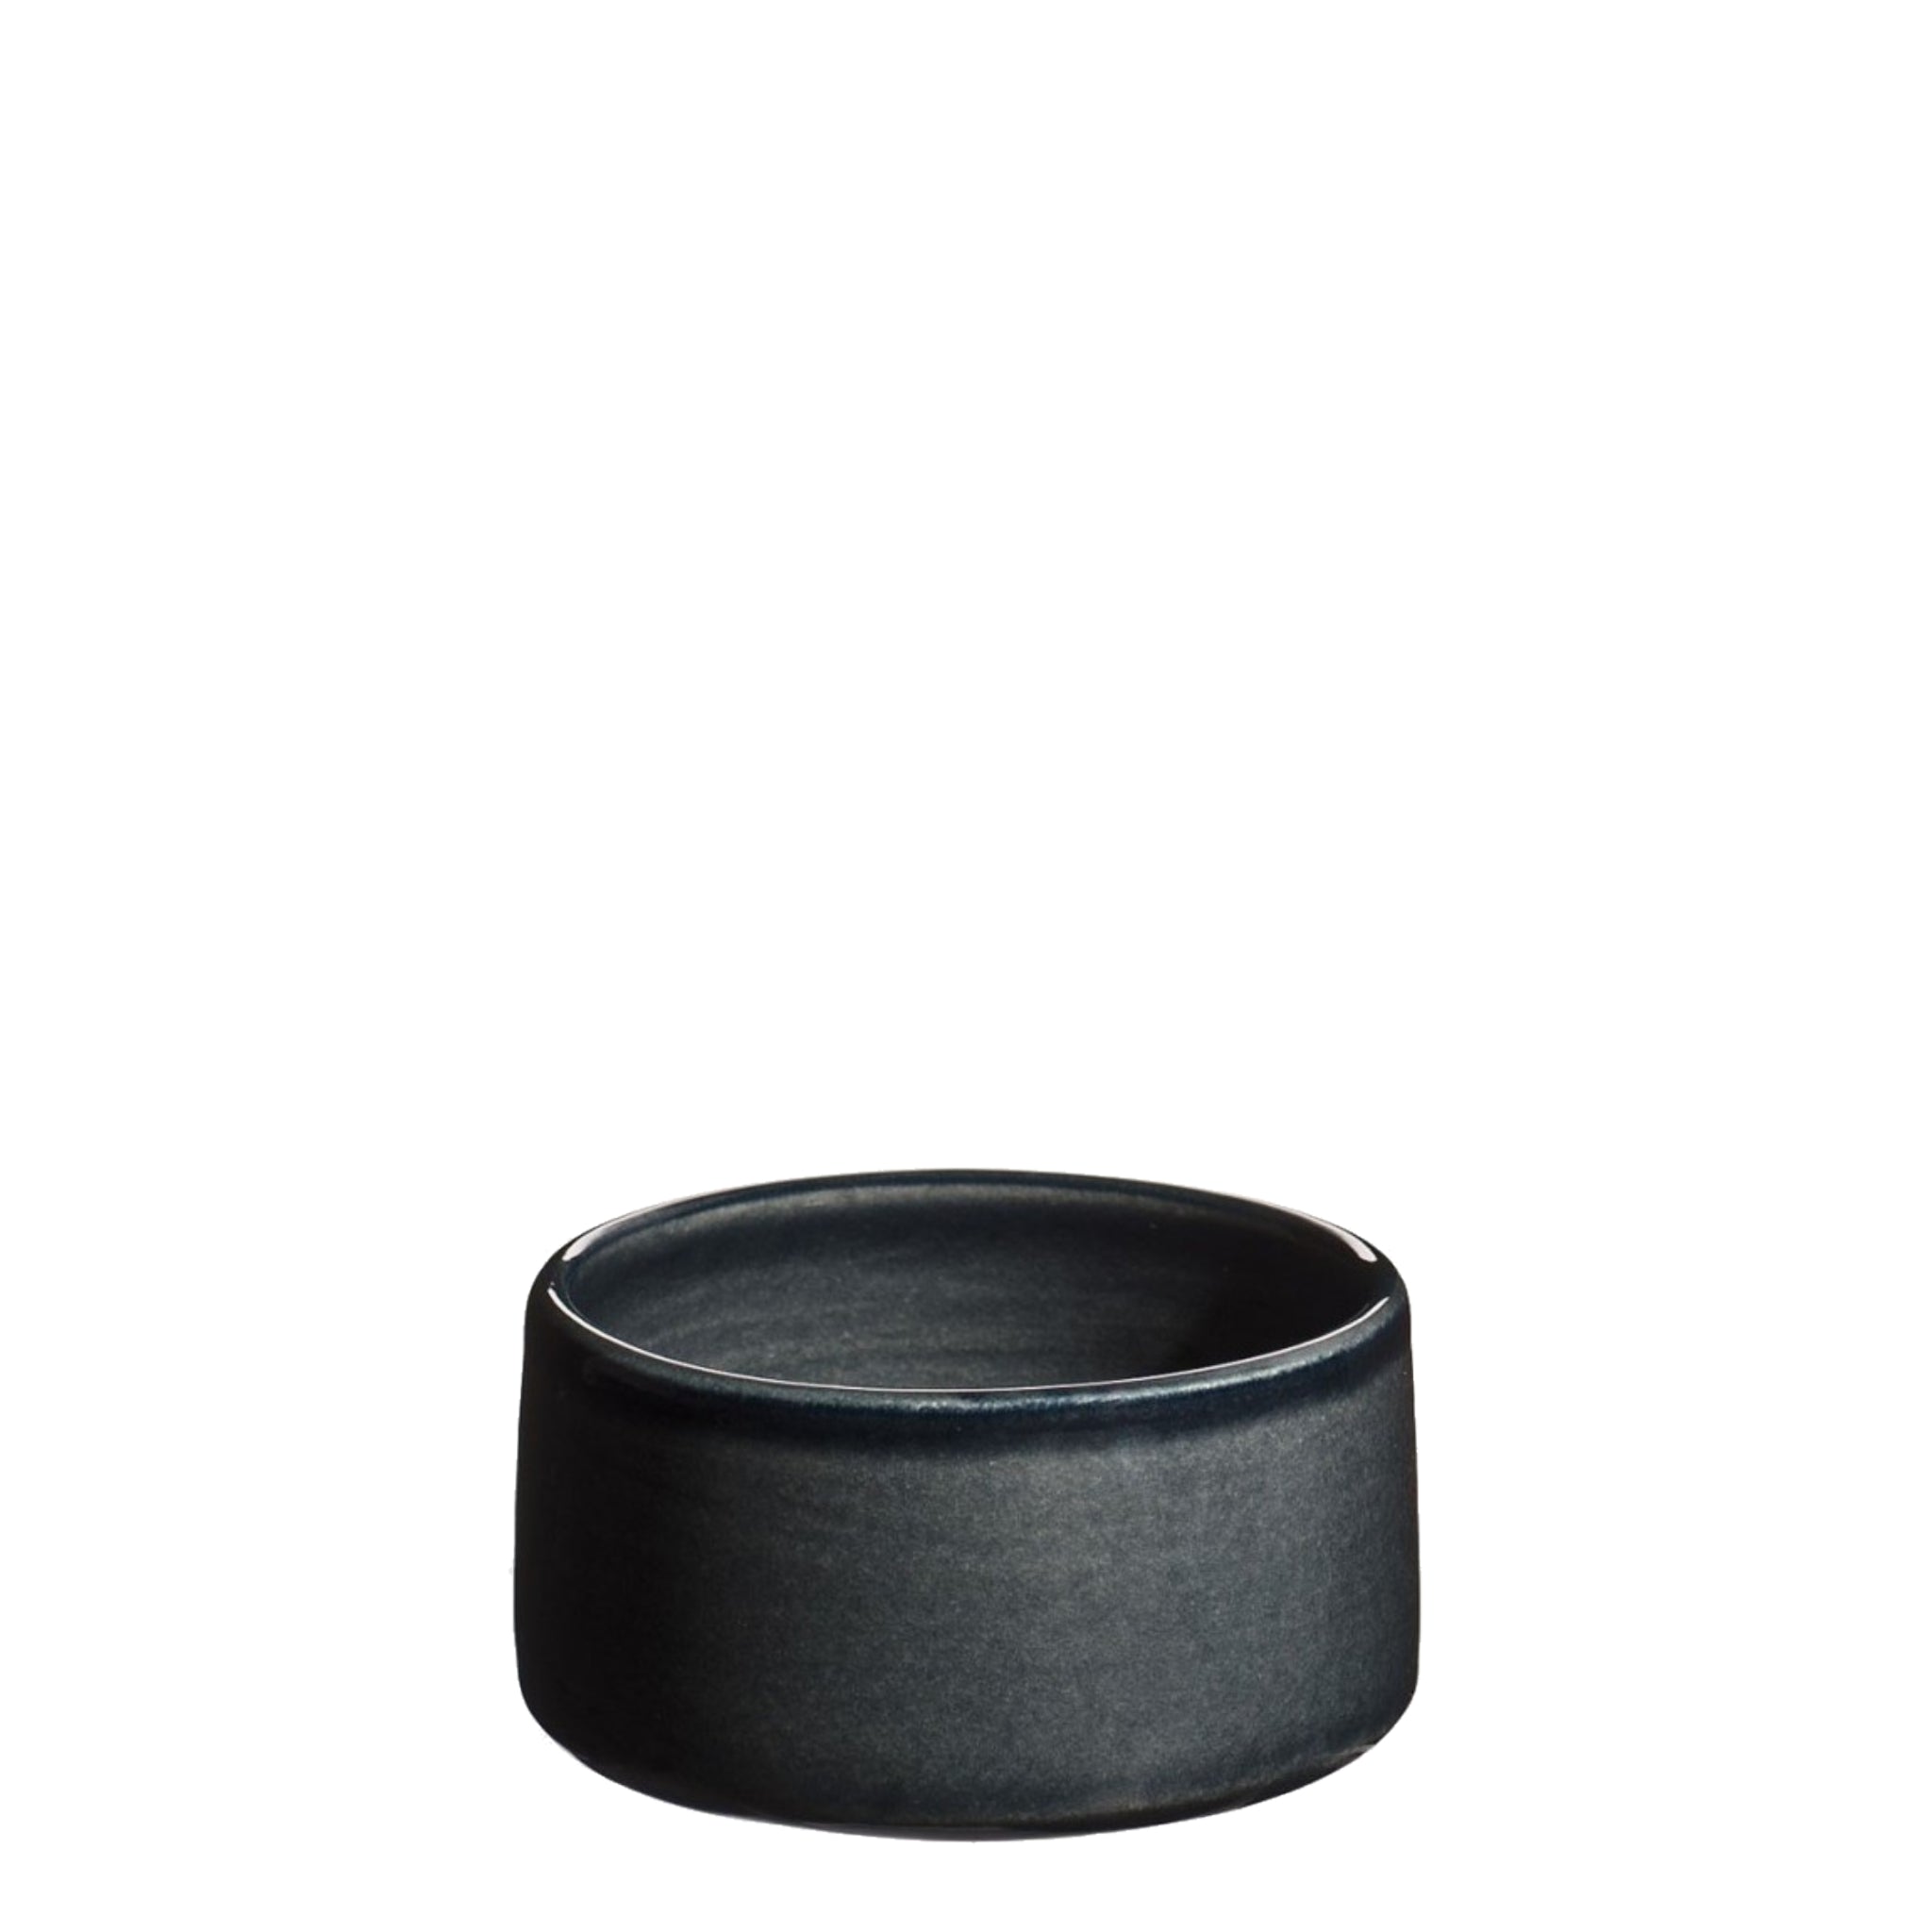 Petit Ravier lille håndlavet keramik skål ramekin i farven aske sort fra Atelier Bernex, Oliviers & Co